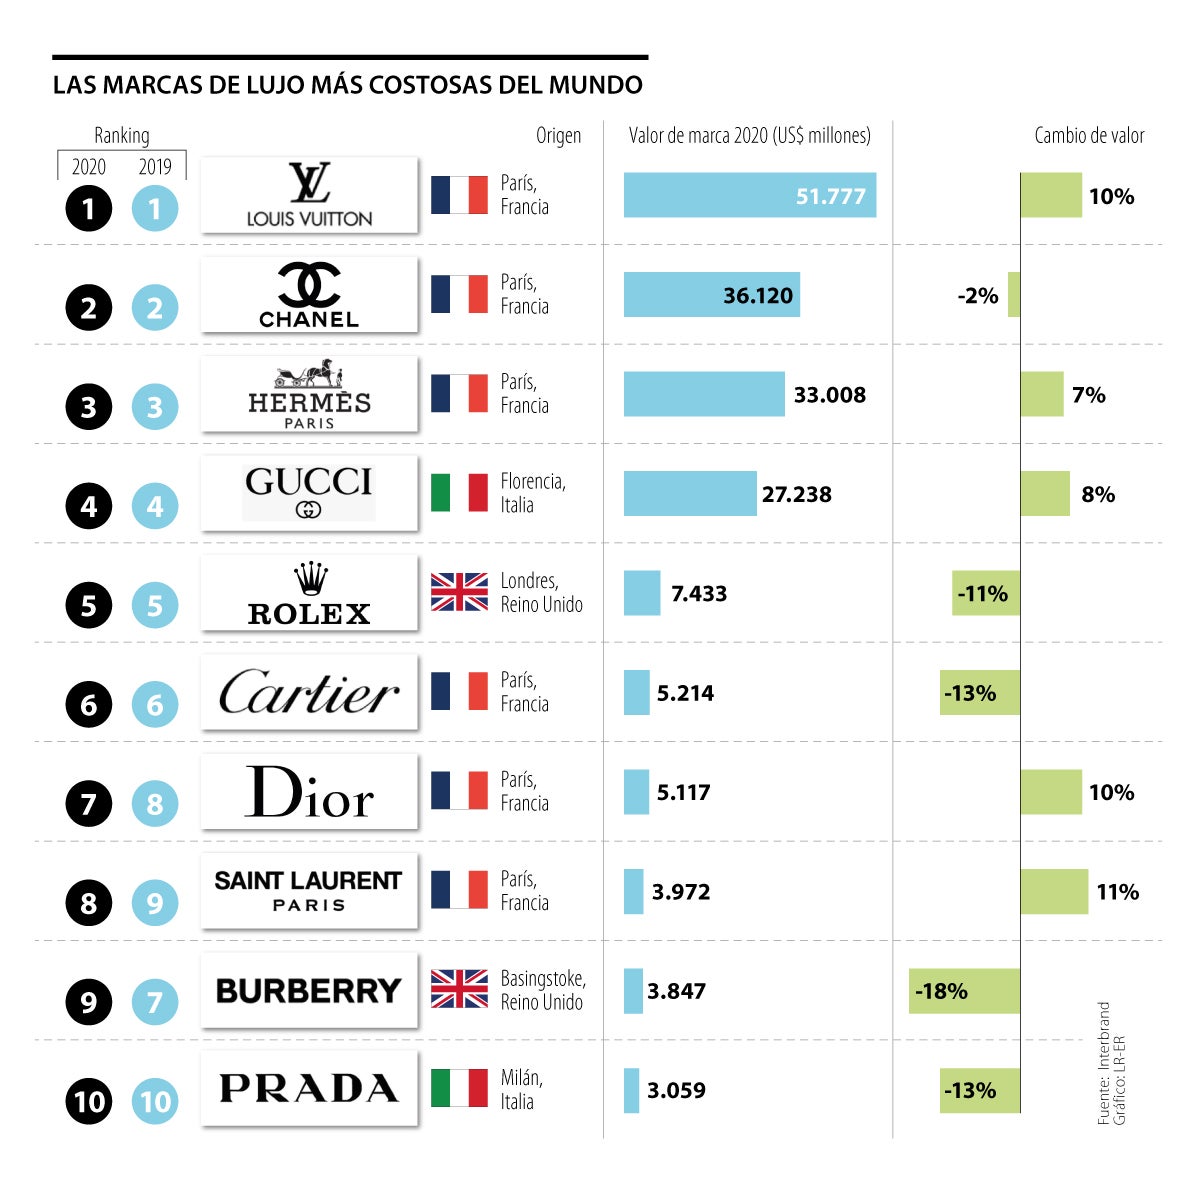 Louis Vuitton siguen el ranking de las marcas de lujo más costosas del mundo